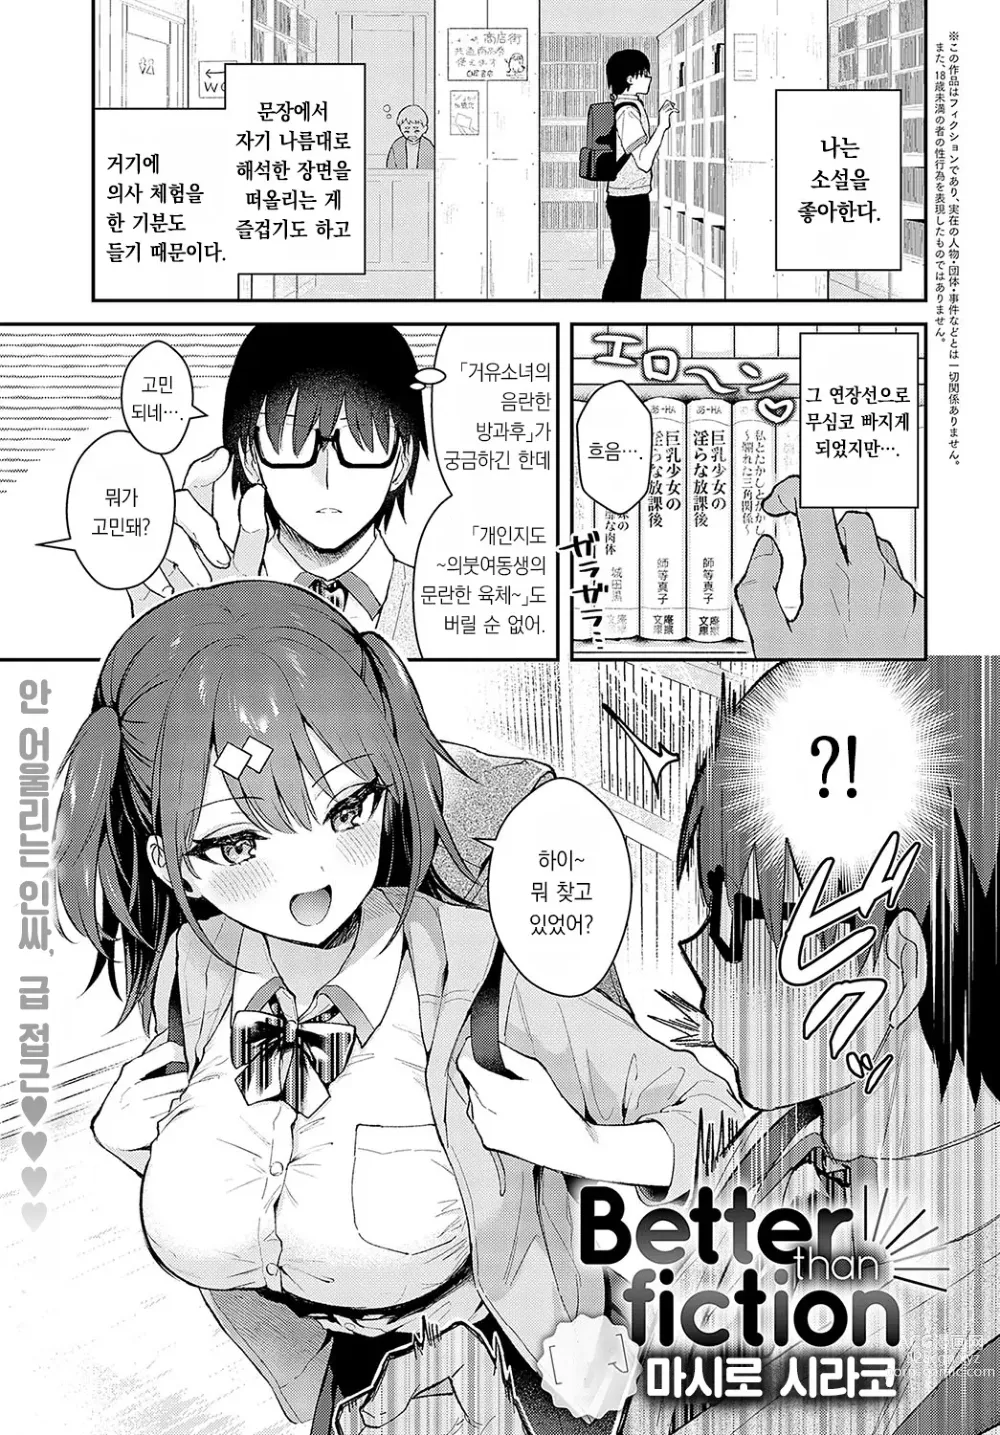 Page 2 of manga Better than fiction